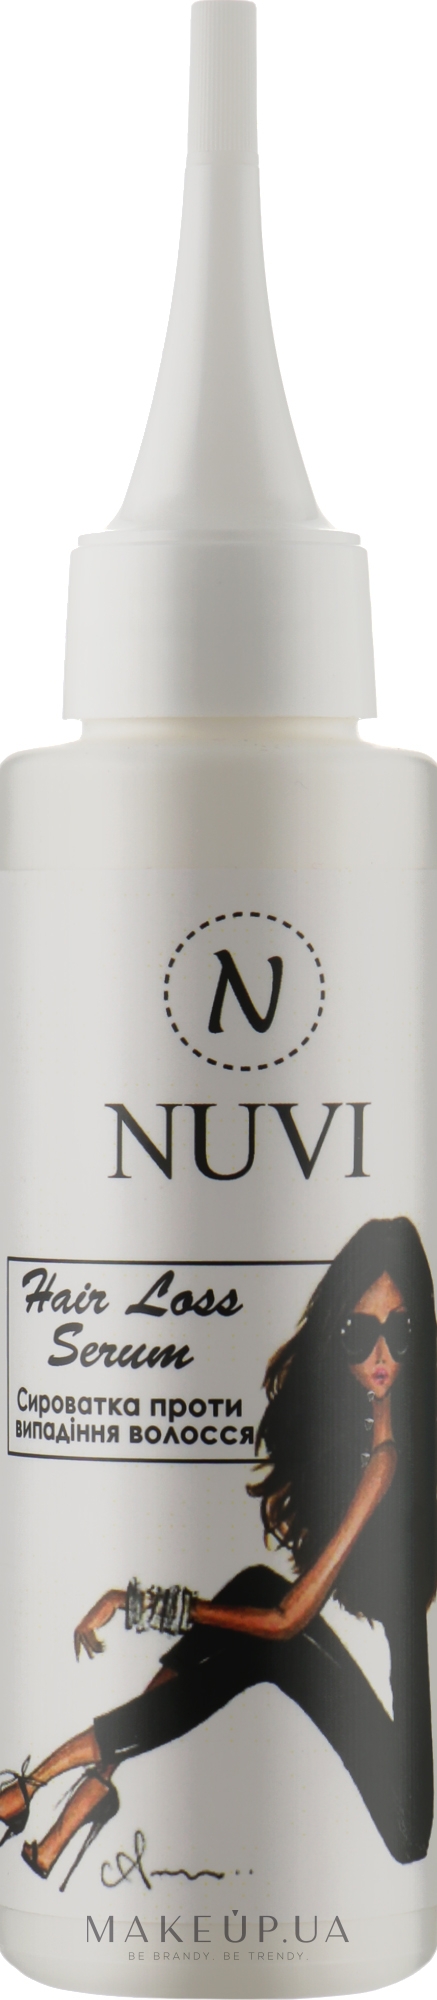 Сироватка проти випадання і для росту волосся - Nuvi Hair Loss Serum — фото 100ml